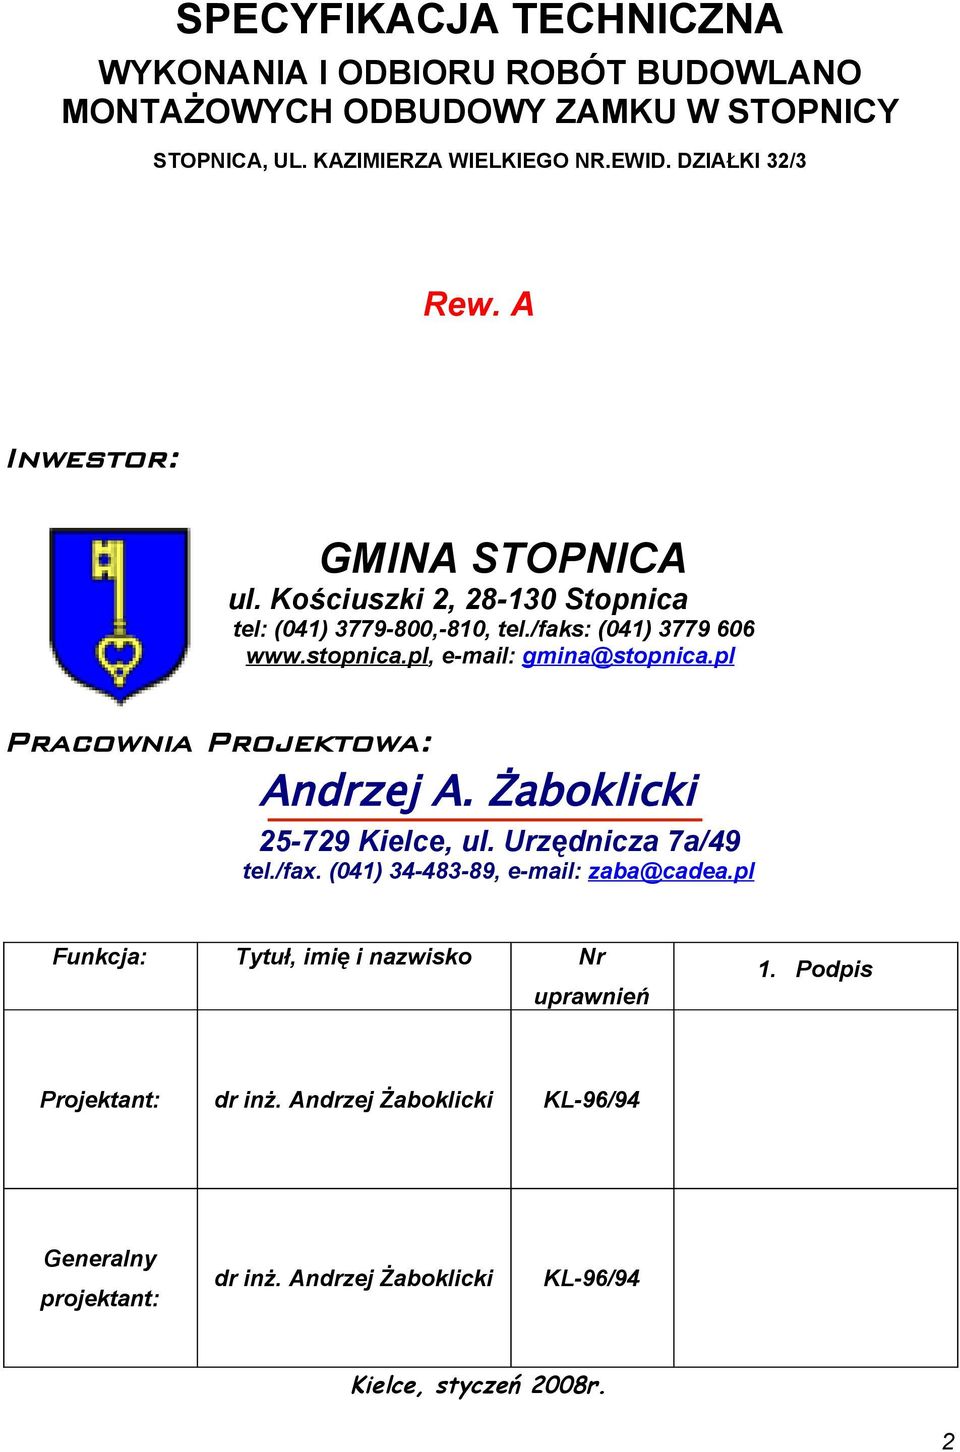 pl, e-mail: gmina@stpnica.pl Pracwnia Prjektwa: Andrzej A. Żabklicki 25-729 Kielce, ul. Urzędnicza 7a/49 tel./fax. (041) 34-483-89, e-mail: zaba@cadea.